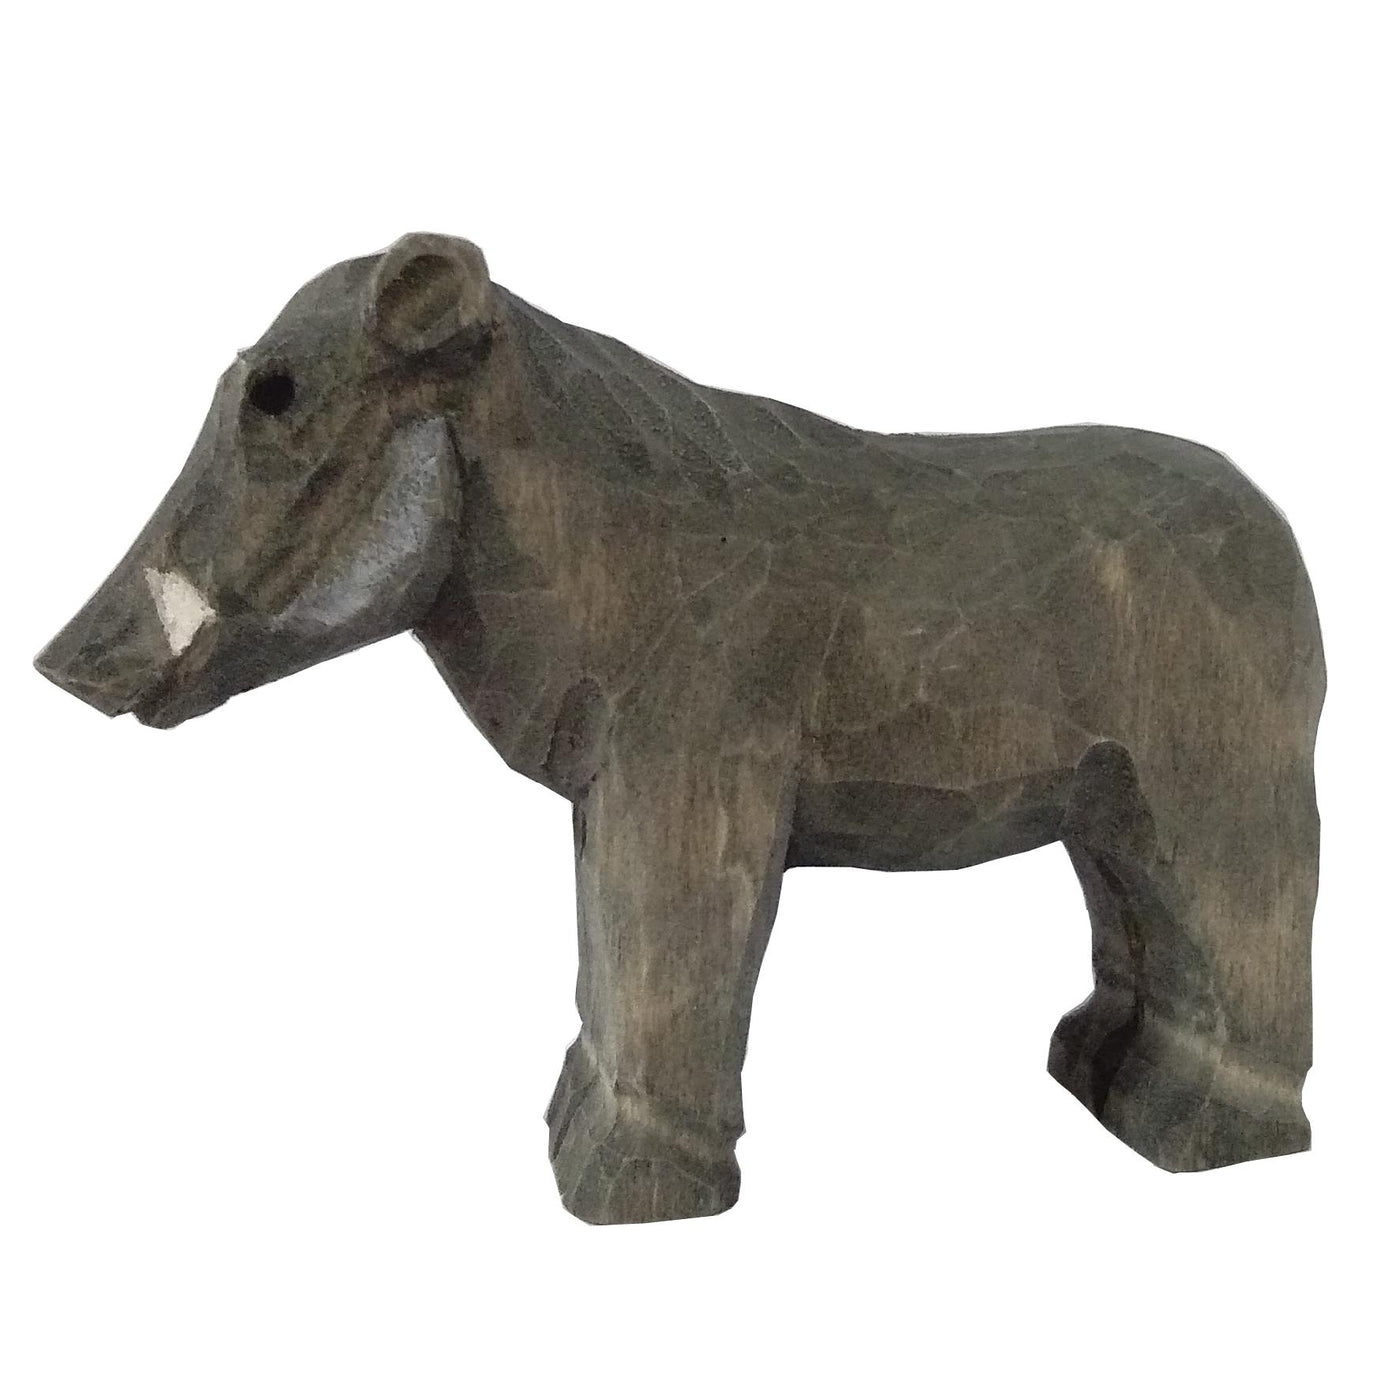 Wudimals® Wooden Warthog Animal Toy